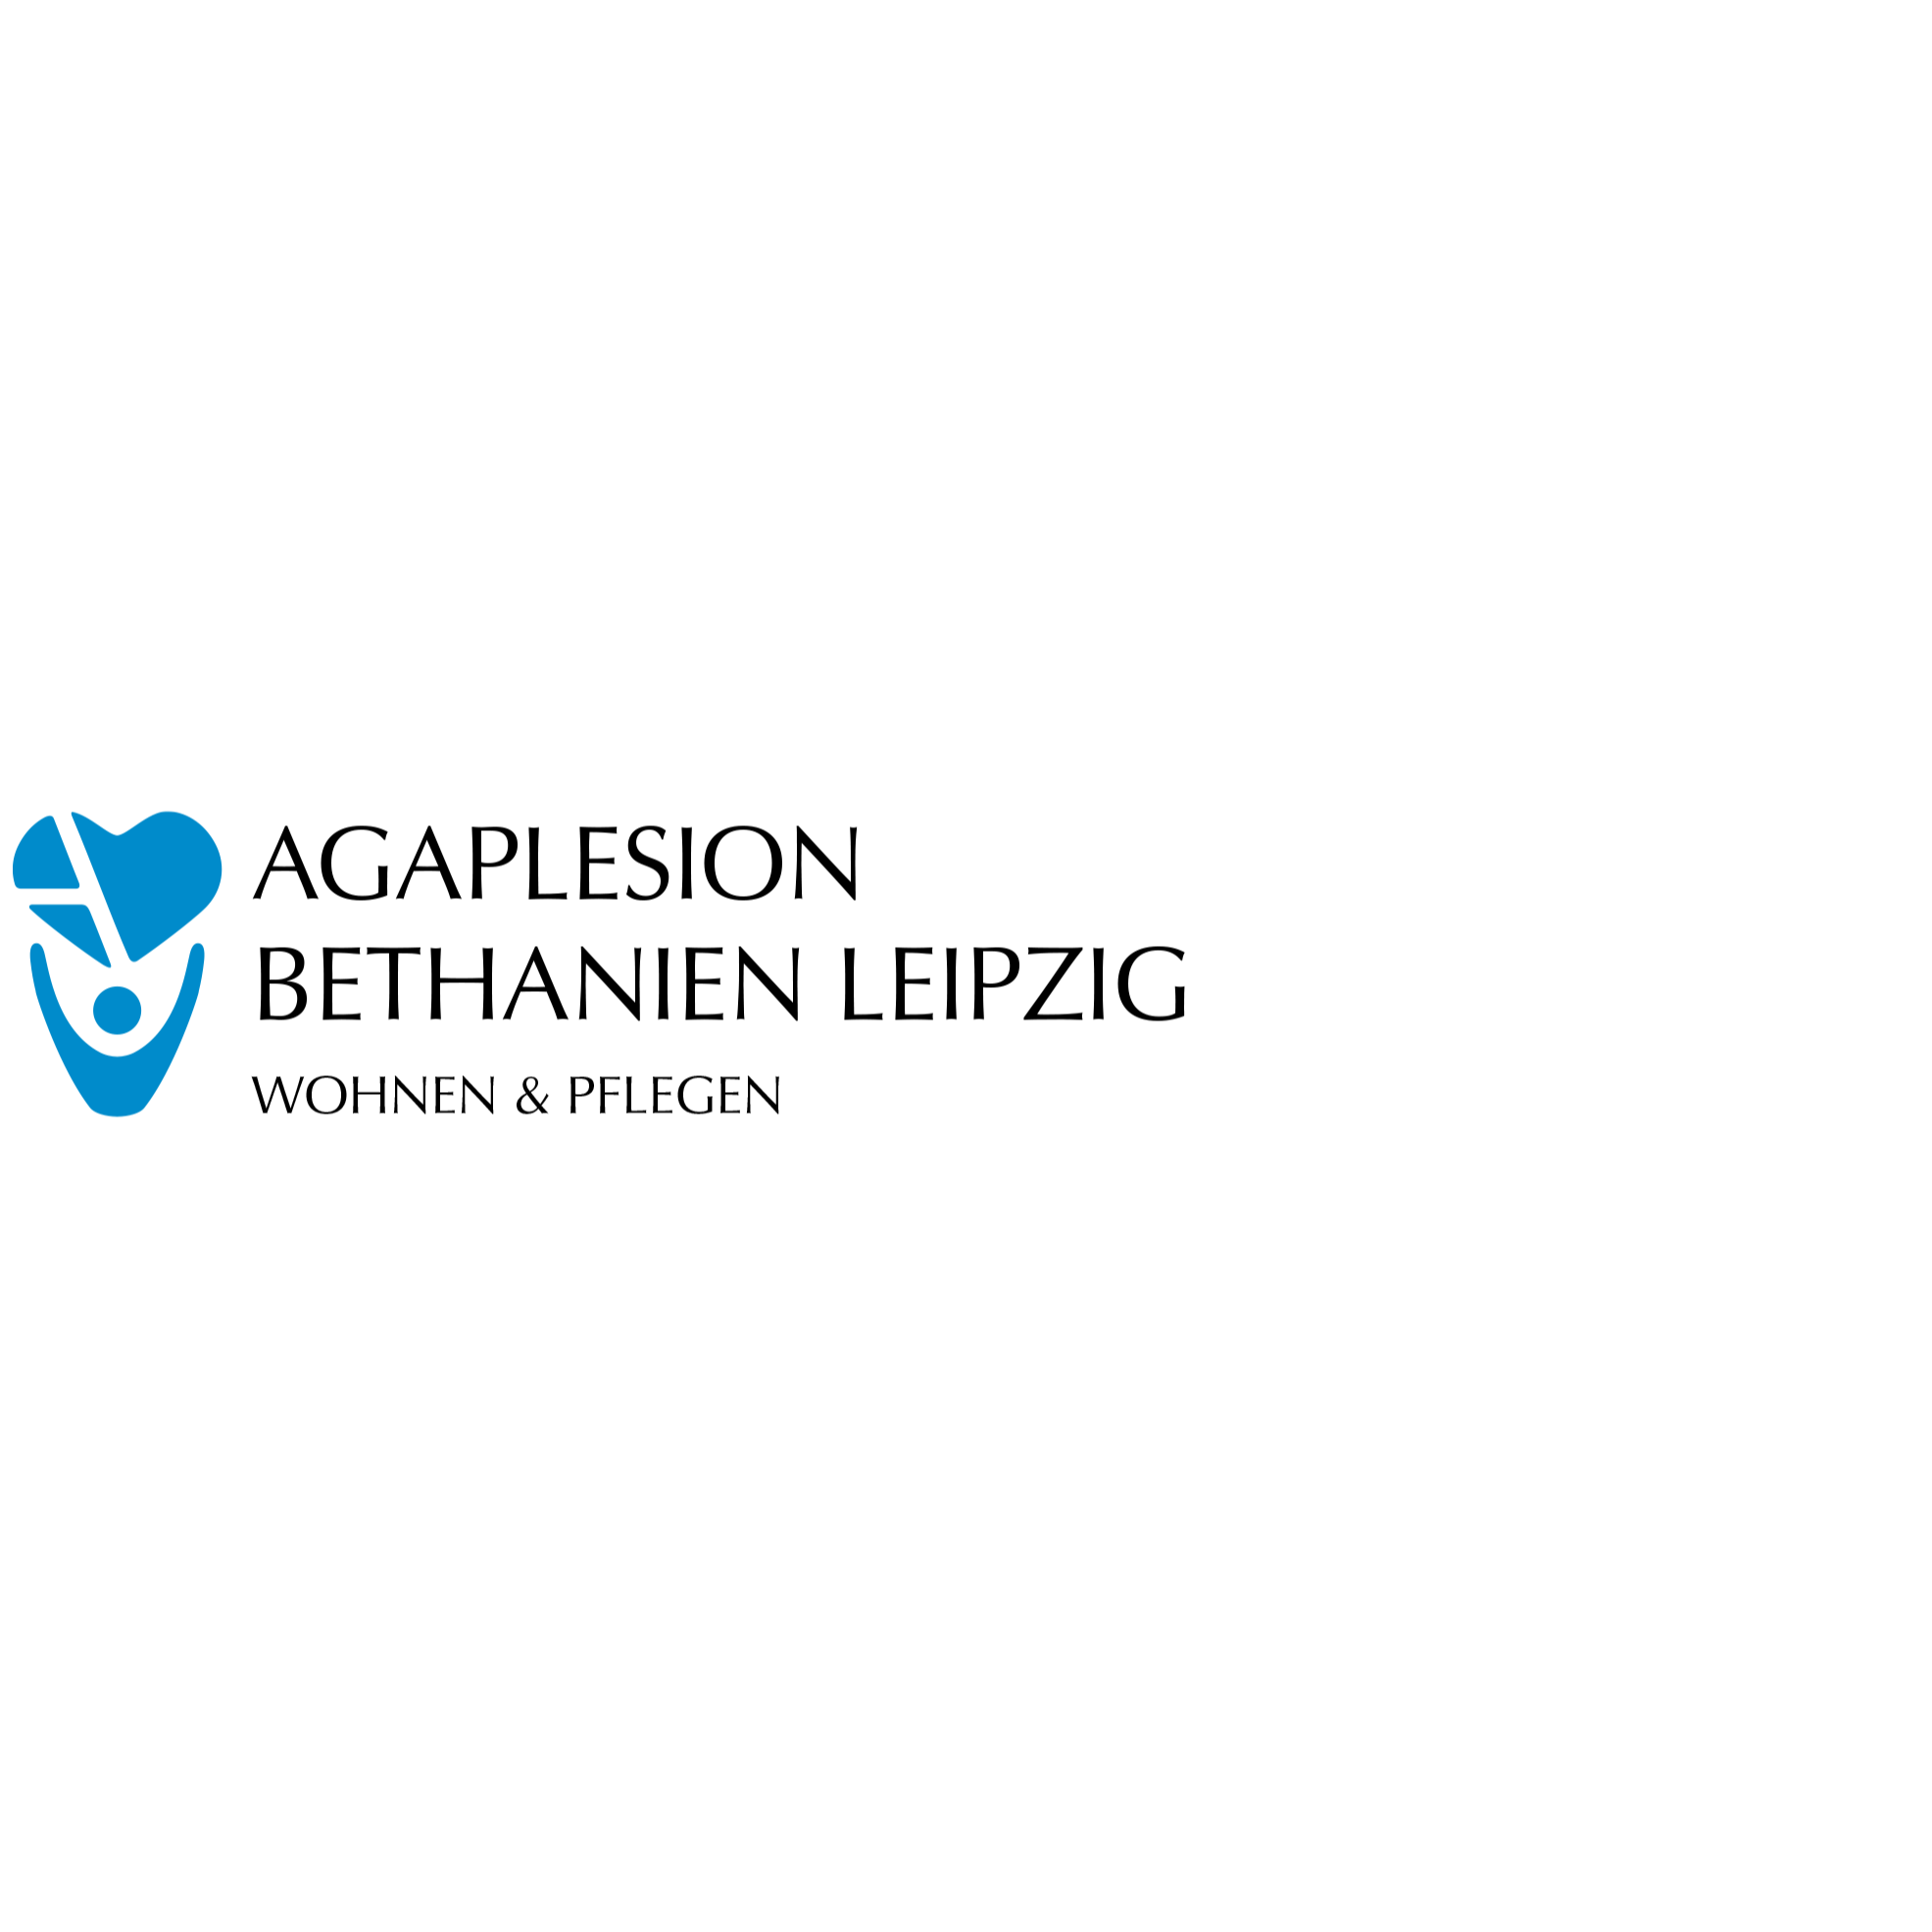 AGAPLESION BETHANIEN LEIPZIG in Leipzig - Logo